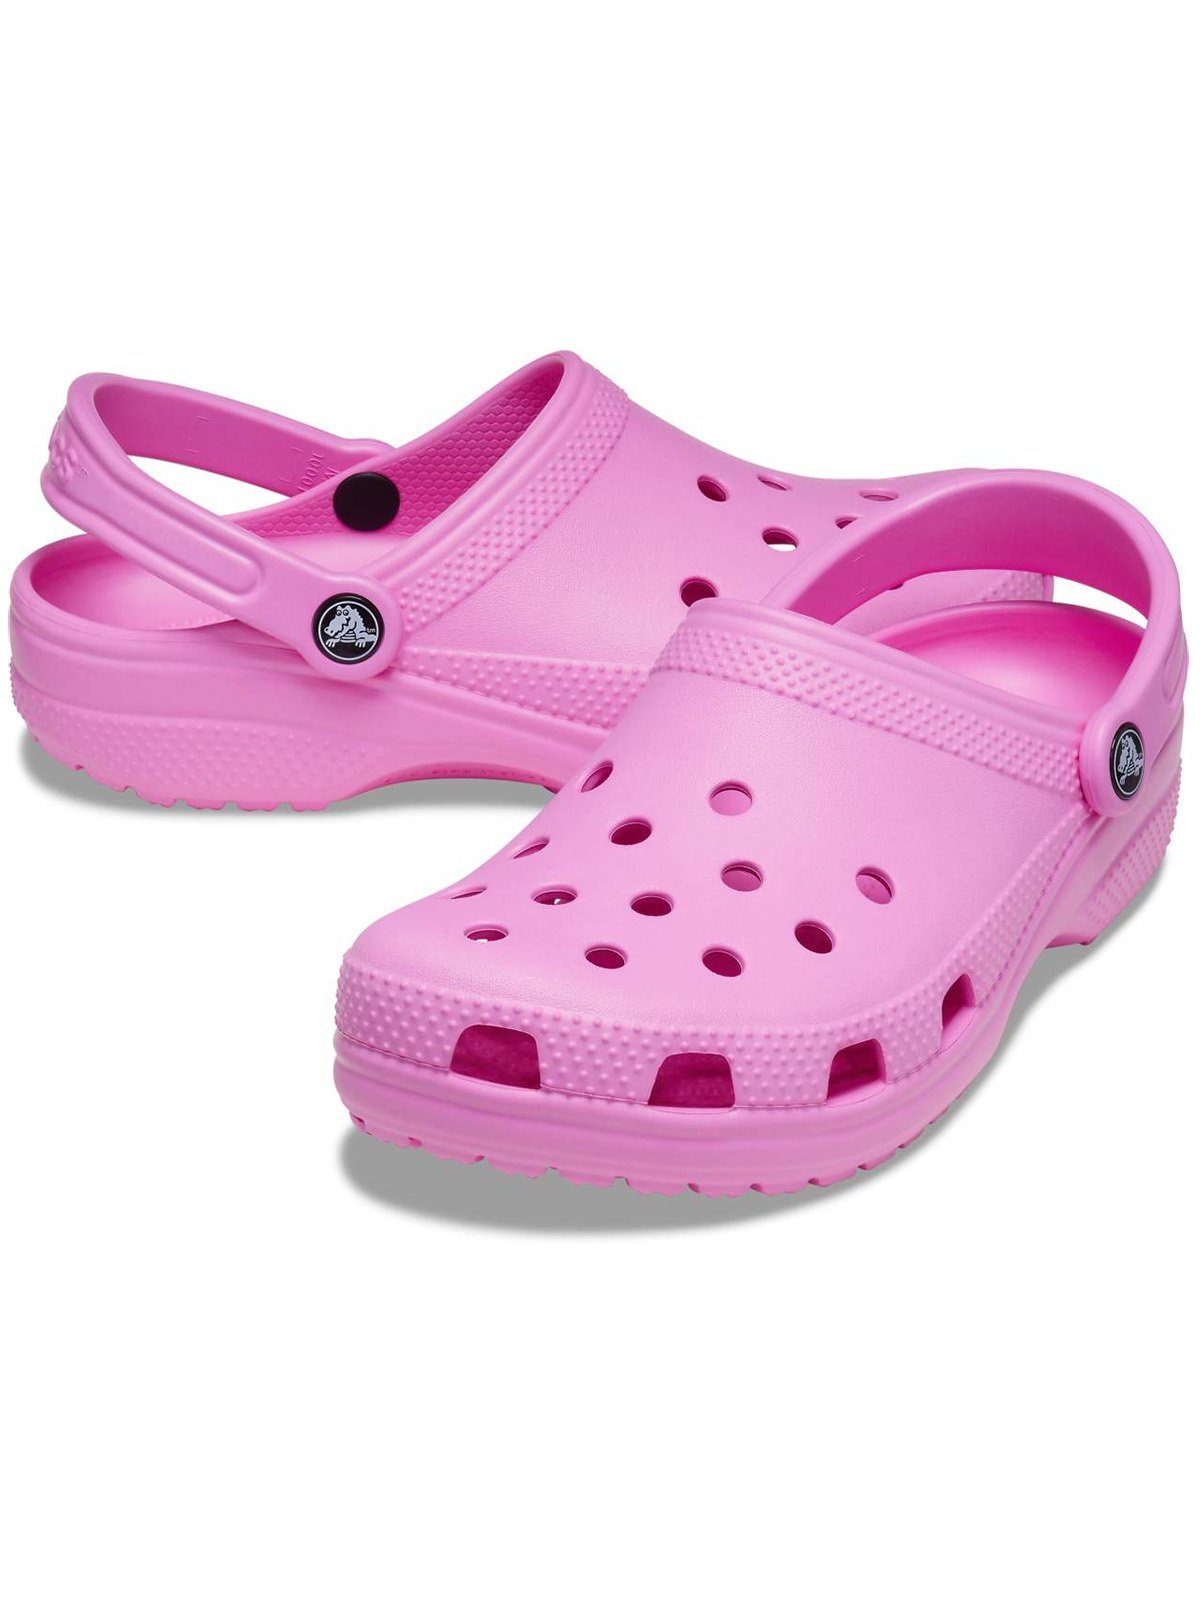 Crocs Crocs taffy Clog Clog Classic pink